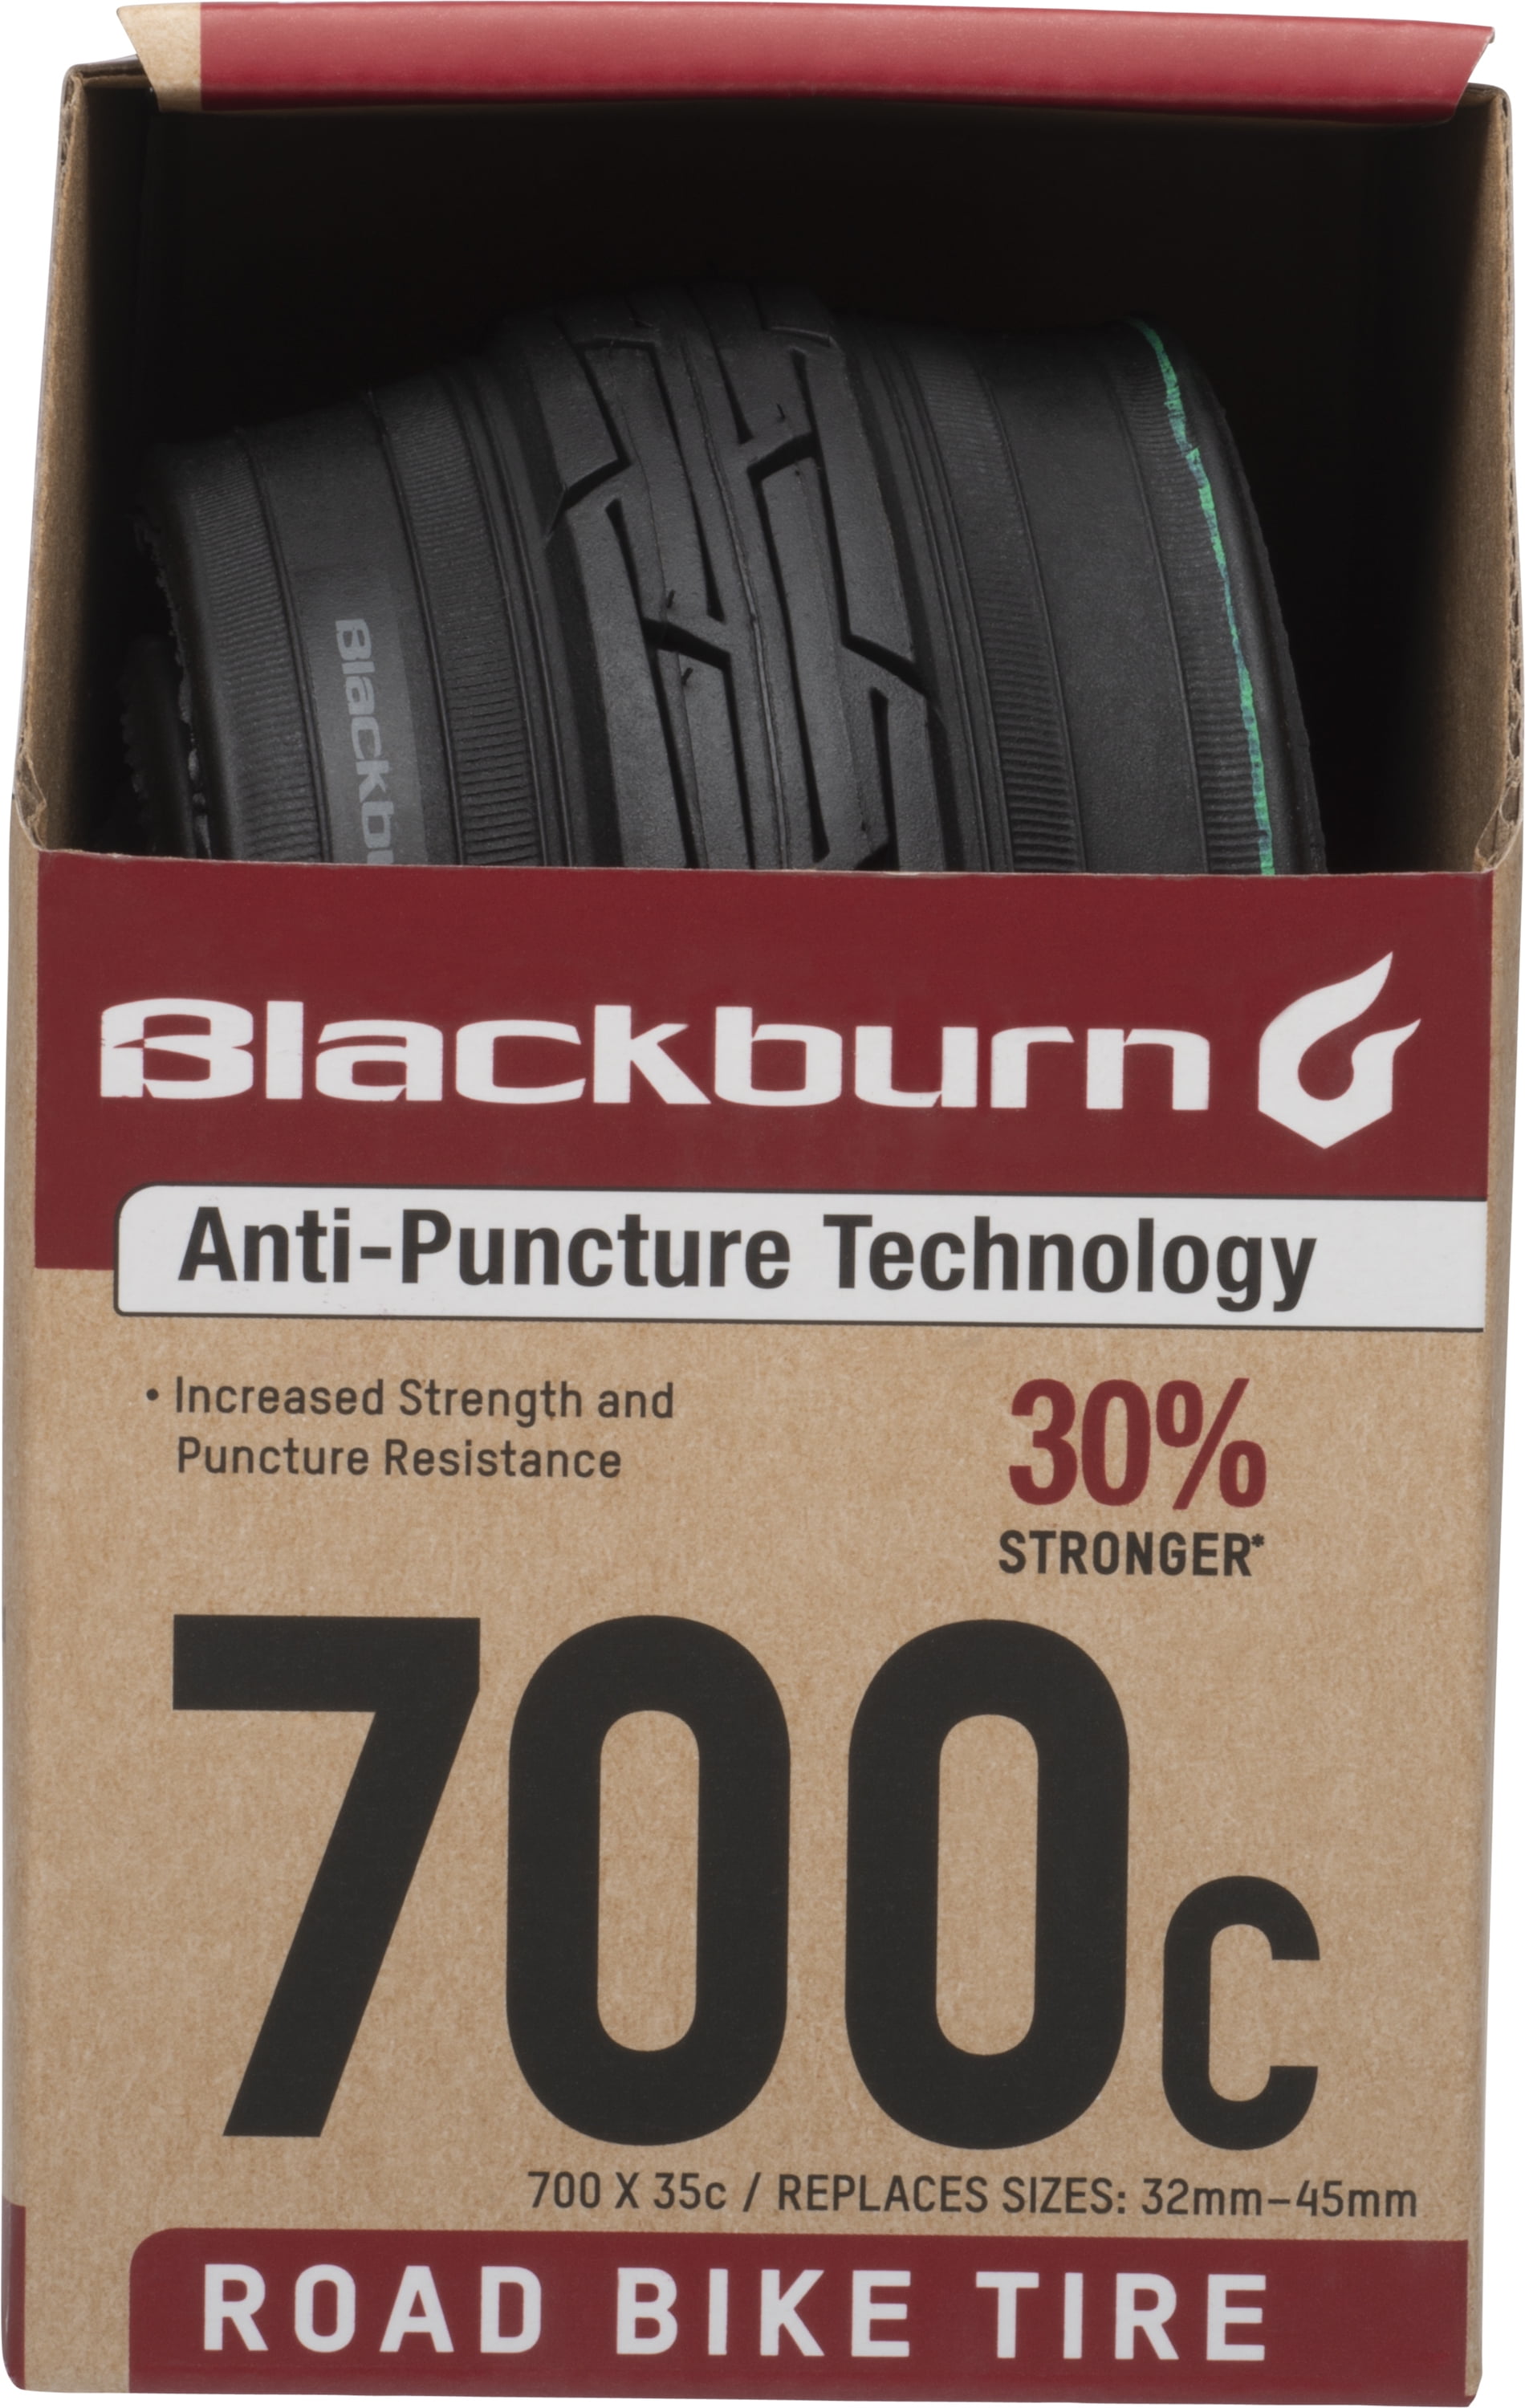 Blackburn 700c Road Bike Tire, 700 x 35c, Black